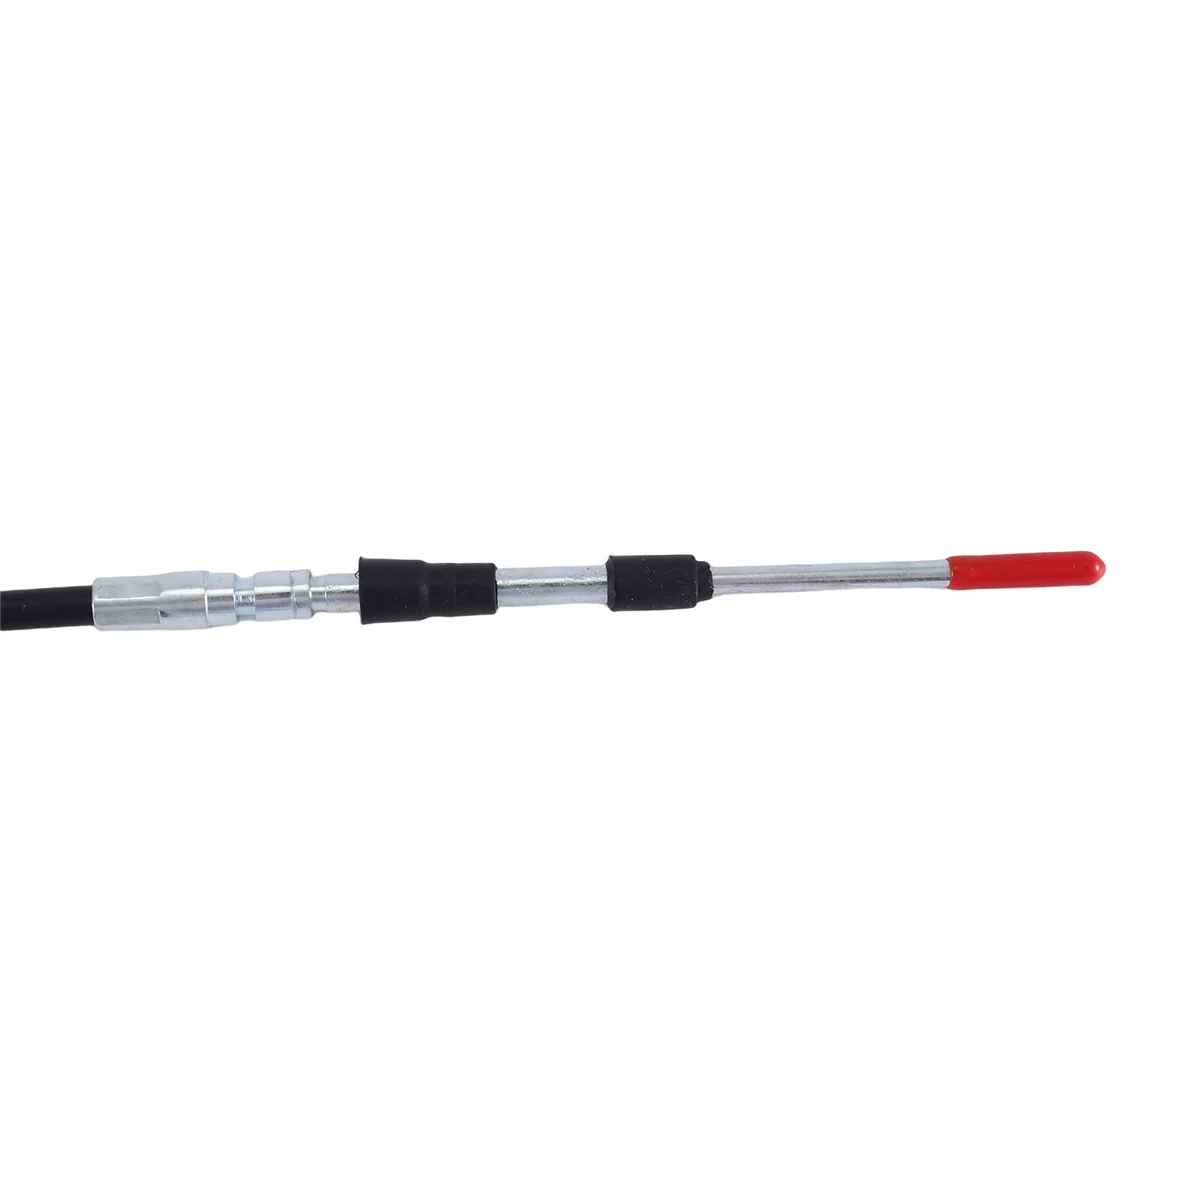 6675668 Cable del Acelerador para Bobcat S100,S220,S250,S300,S330,MT50,341 del Acelerador Cable del Acelerador . ' - ' . 5